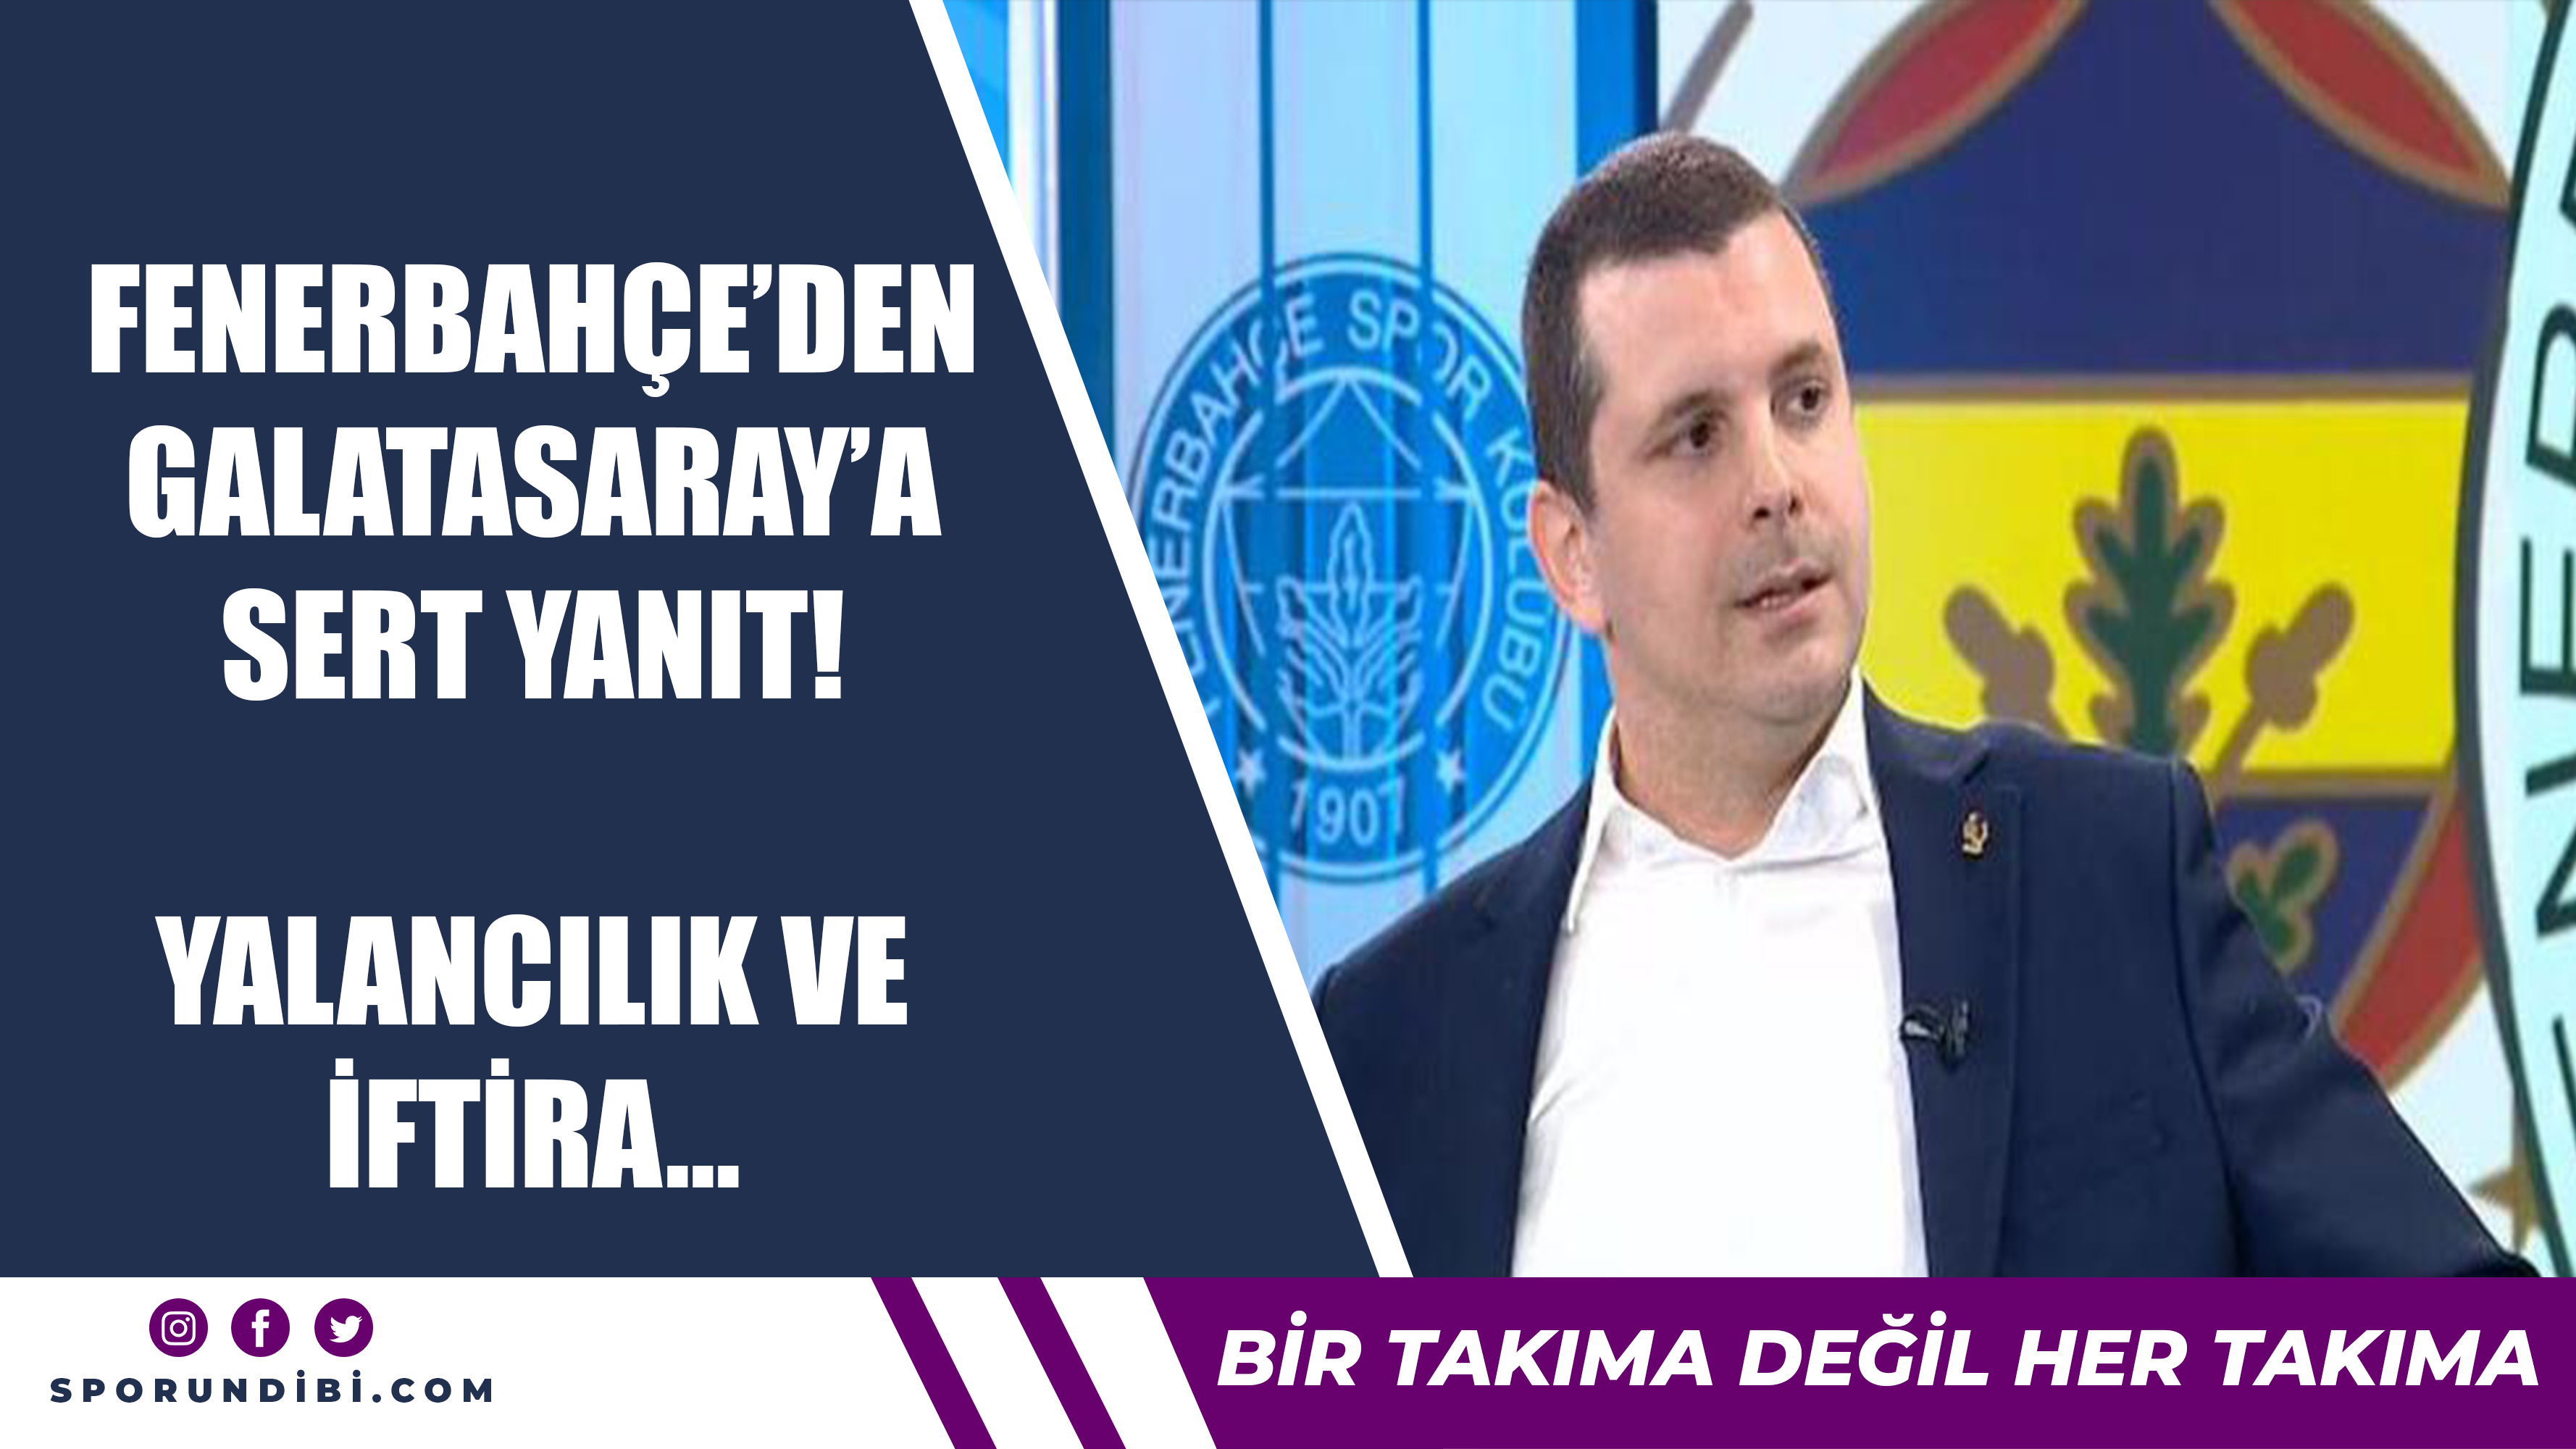 Fenerbahçe'den Galatasaray'a sert yanıt! Yalancılık ve iftira...